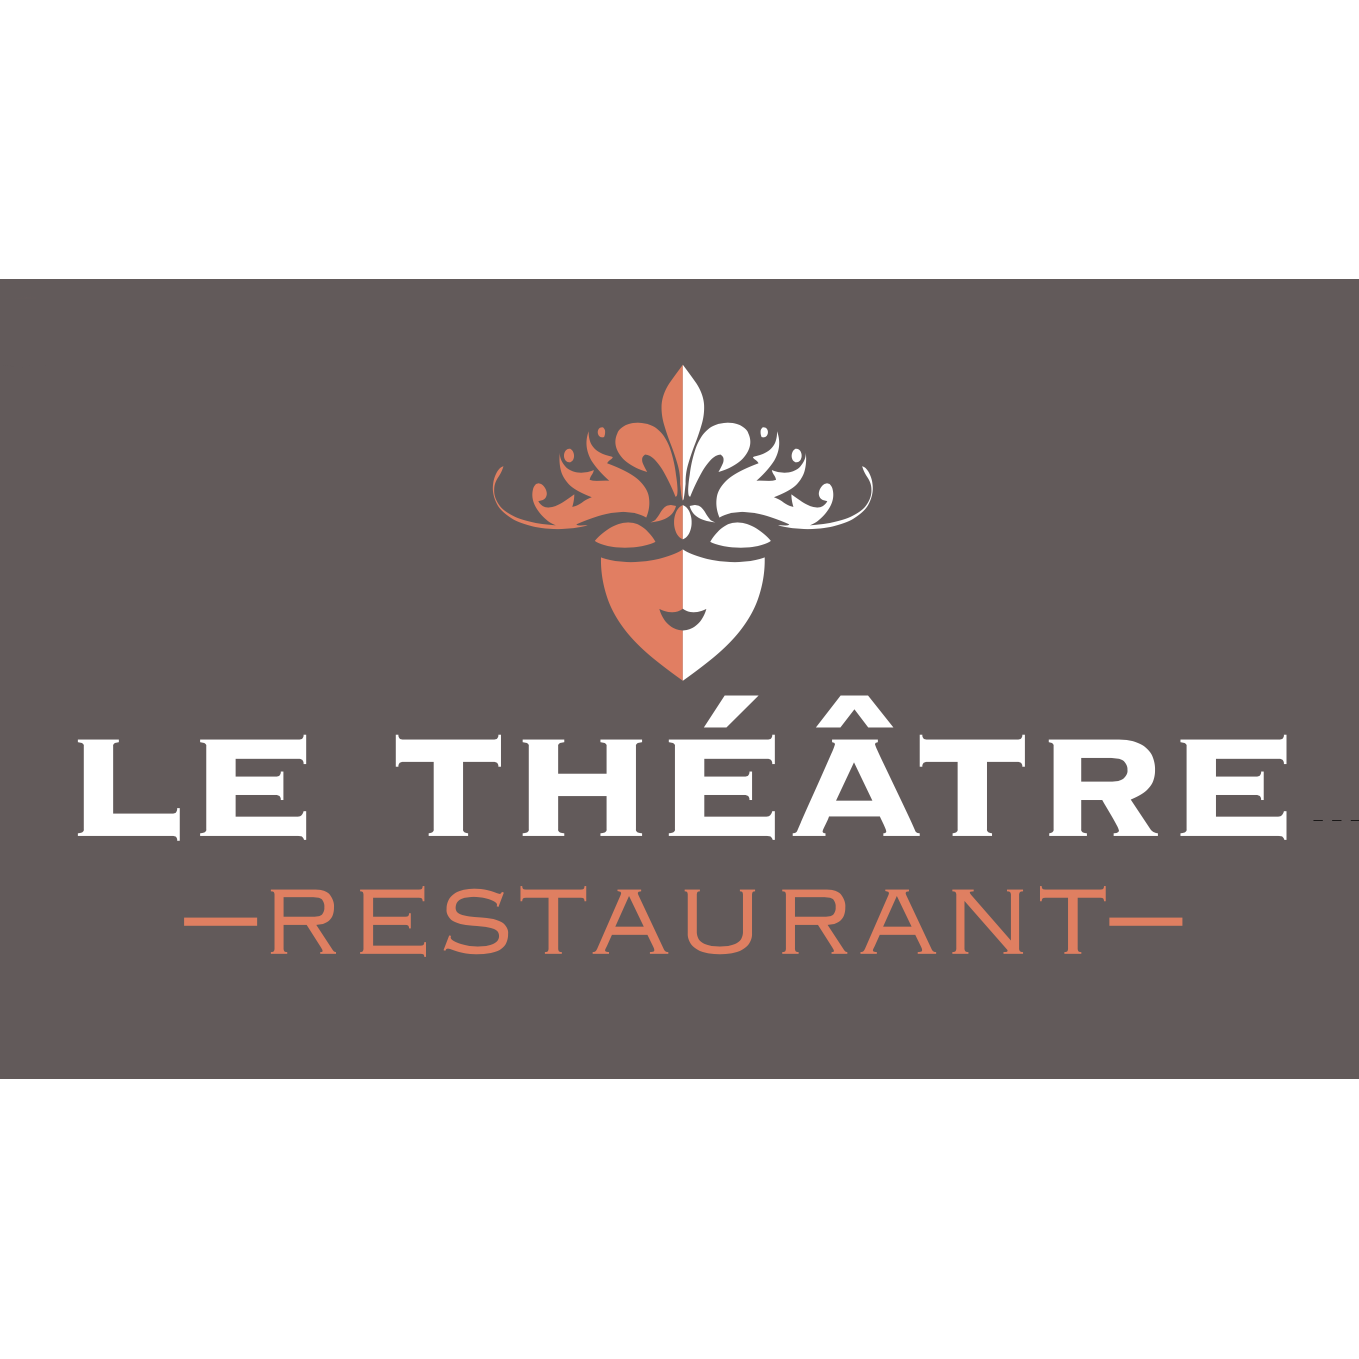 Le Théâtre Restaurant - Restaurant - Lausanne - 021 351 51 15 Switzerland | ShowMeLocal.com